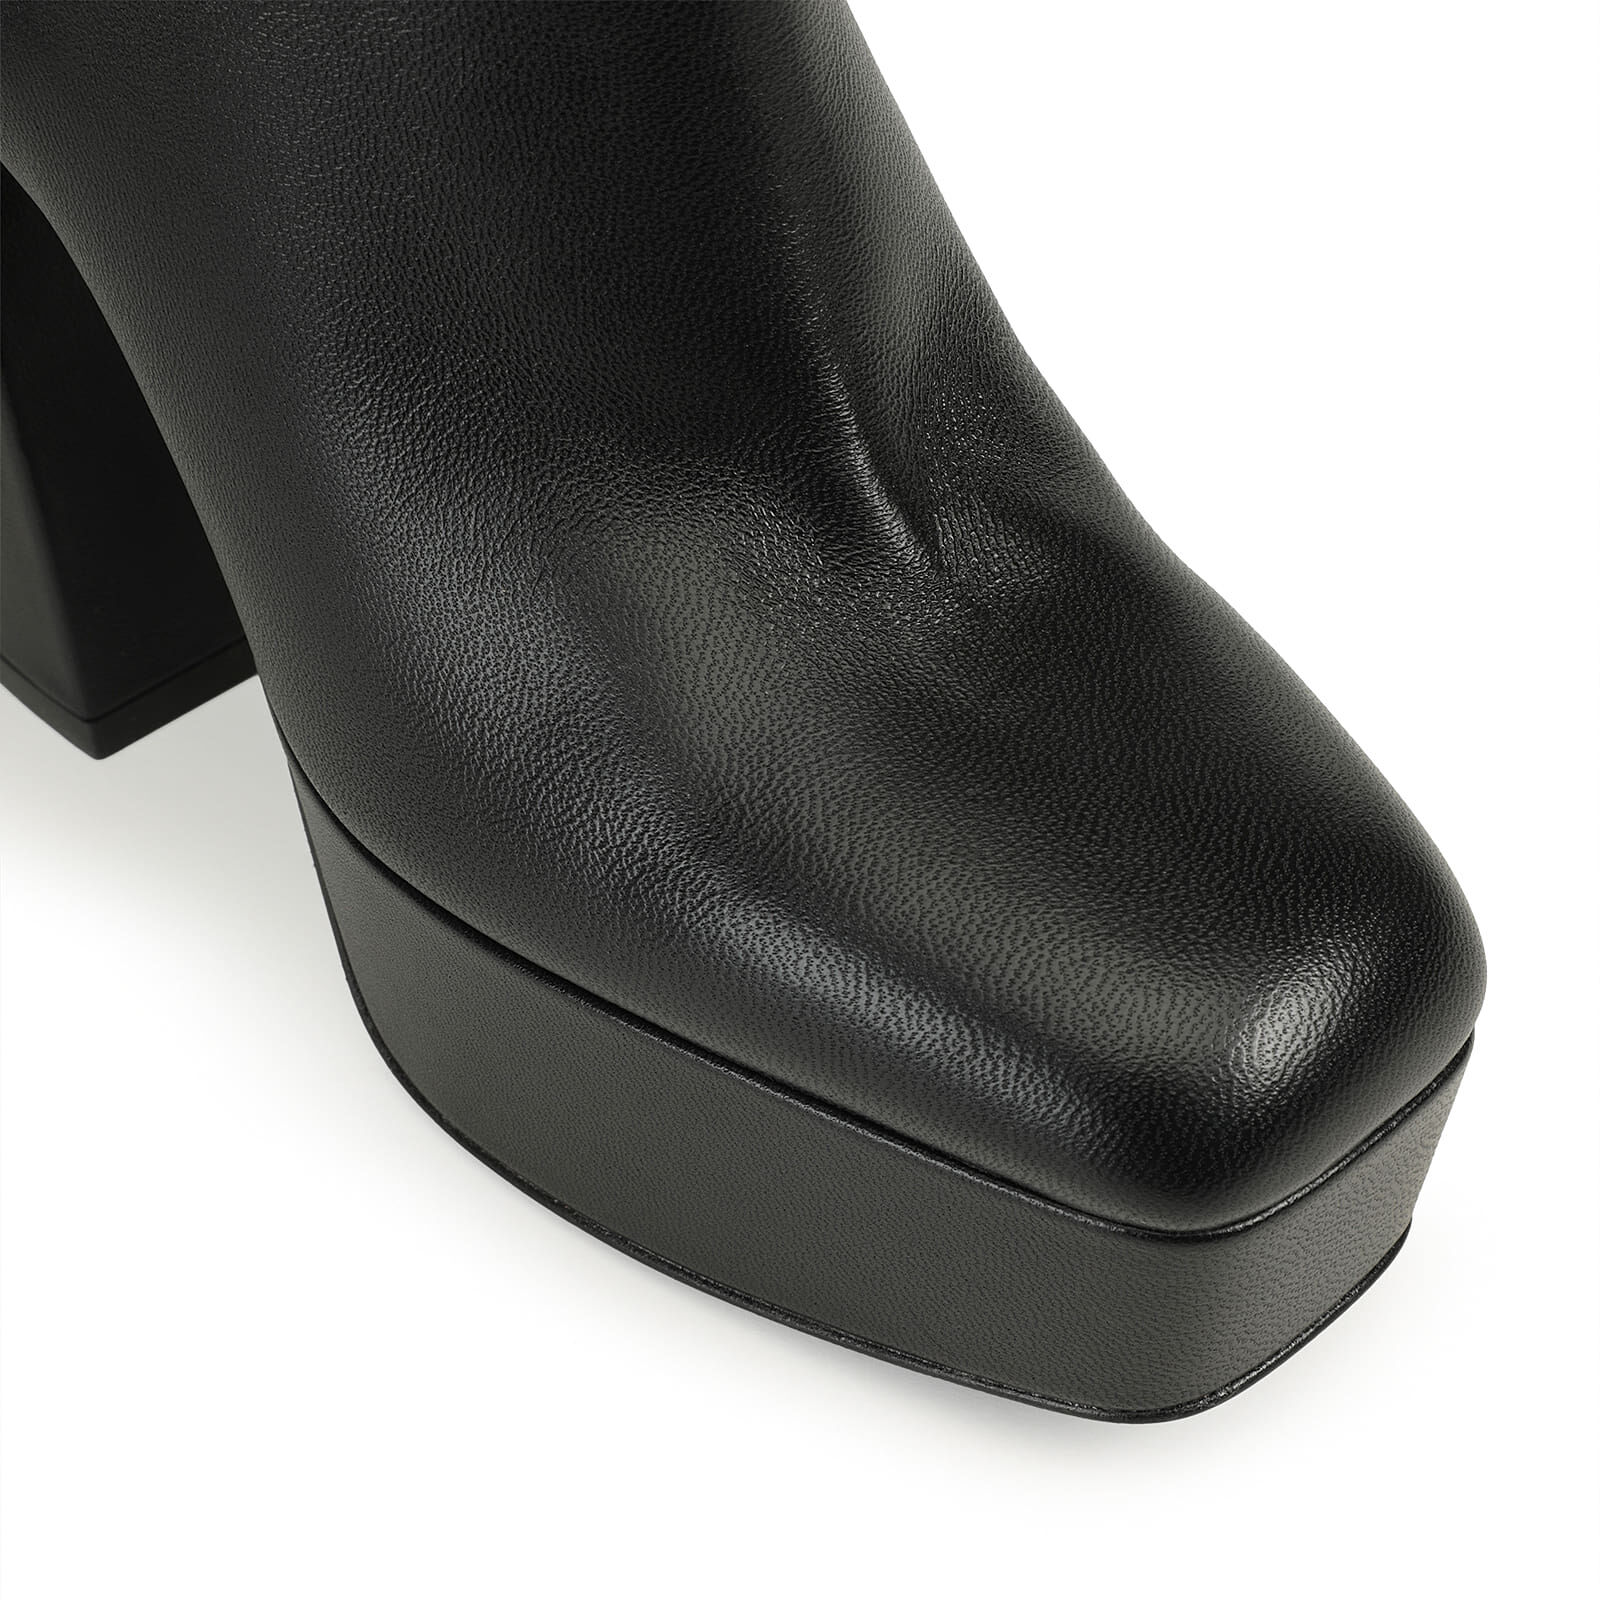 Booties Black High heel: 85mm, sr Alicia Platform - Booties Black